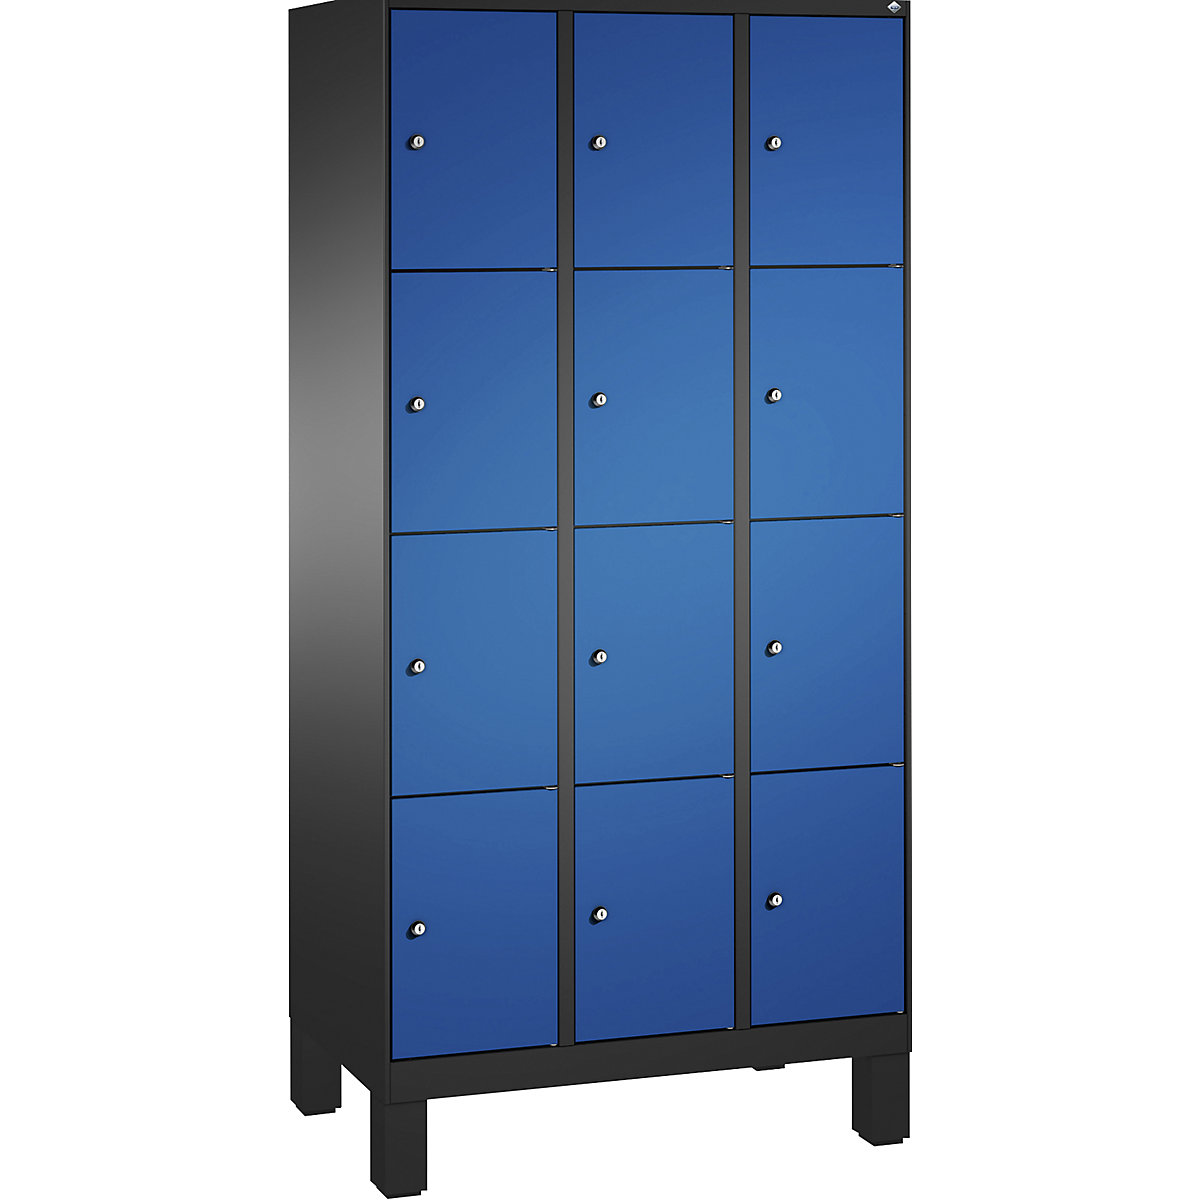 Armoire à casiers sur pieds EVOLO – C+P, 3 compartiments, 4 casiers chacun, largeur compartiments 300 mm, gris noir / bleu gentiane-13